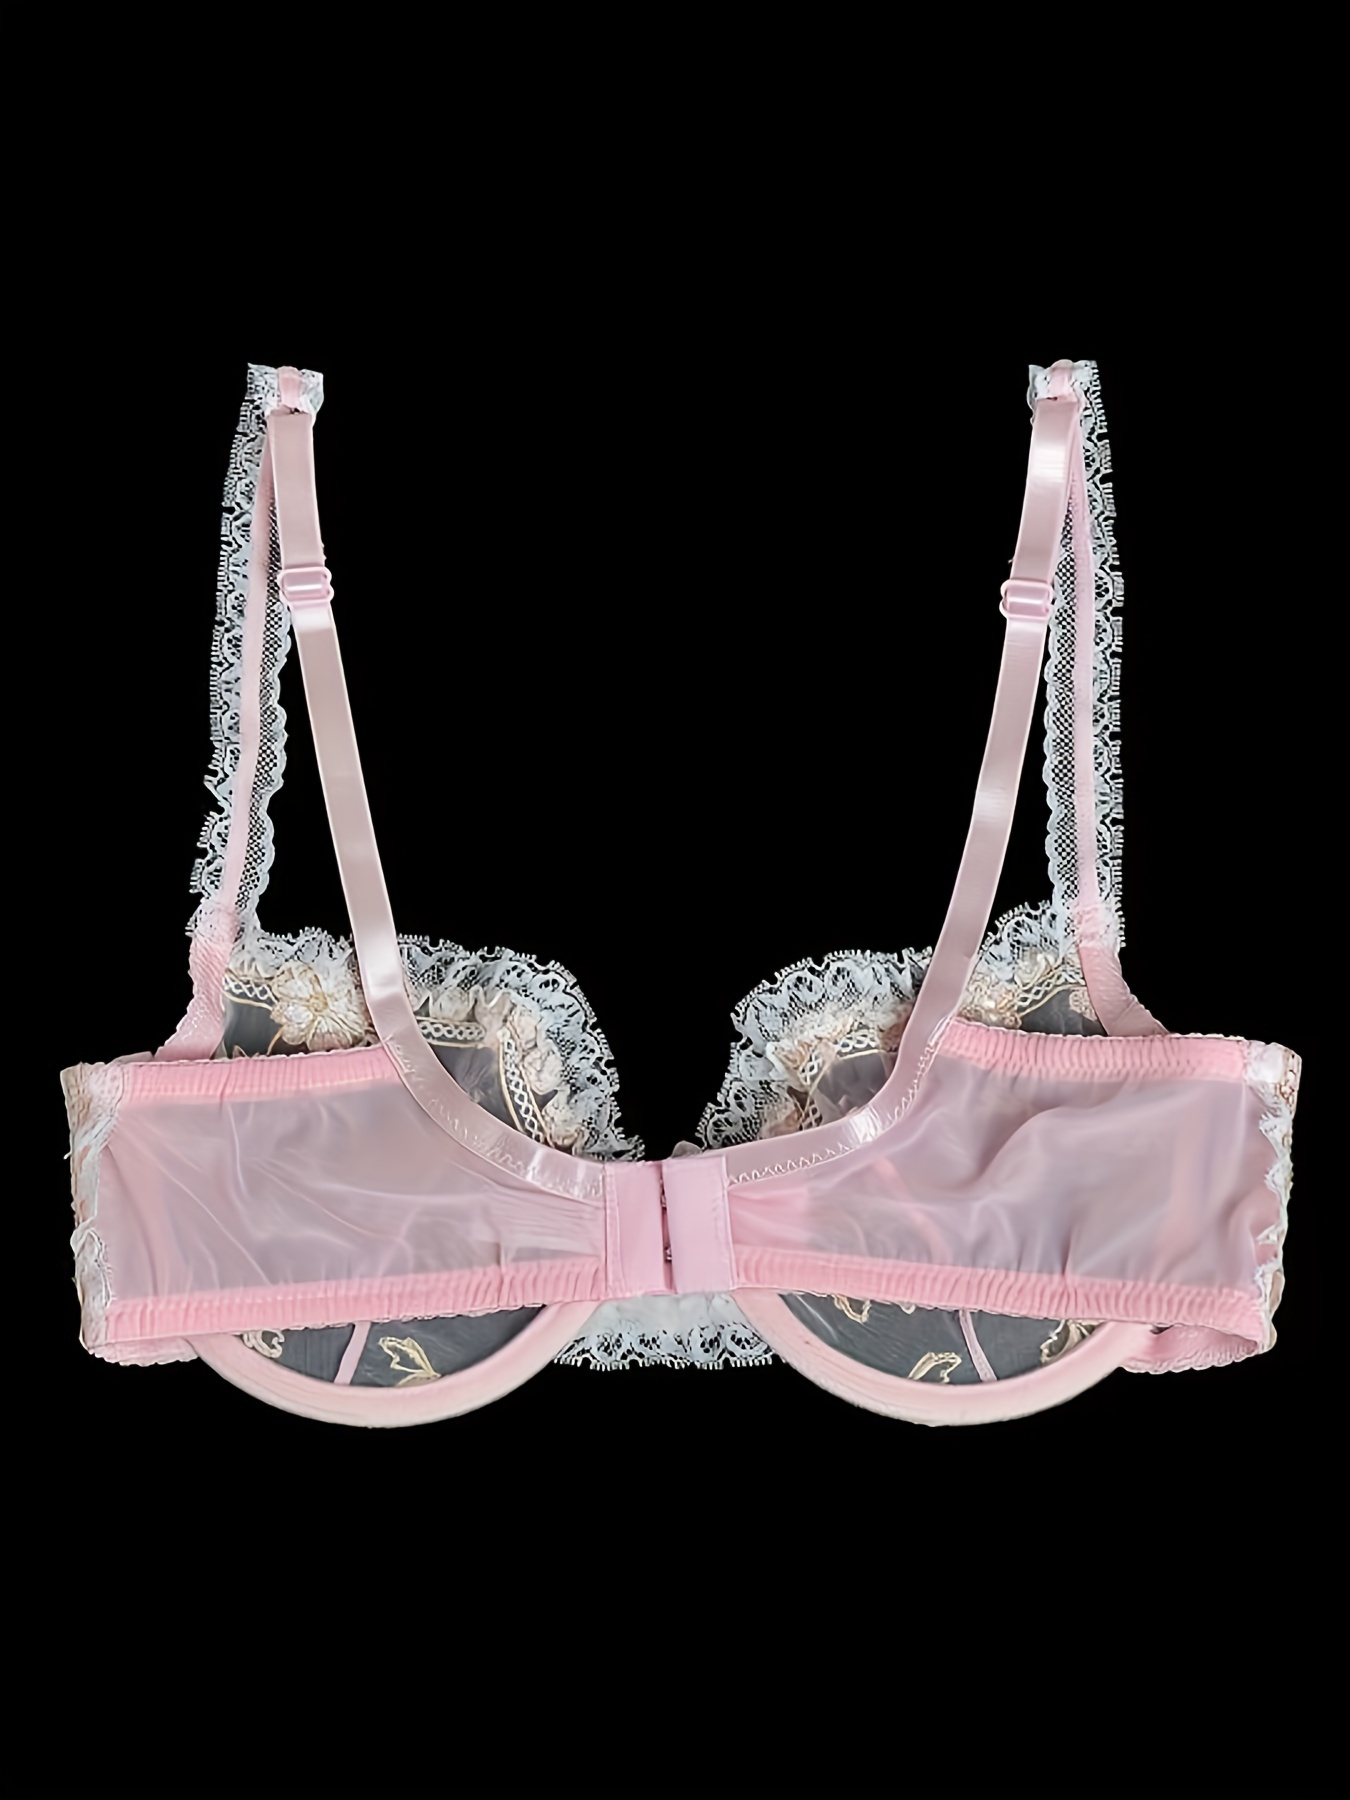 Qiaonvzi new bras for women lace bralette embroidery unlined underwire sexy  lingerie bra floral 36DD 38DD 40DD 42DD 44DD 46DD - AliExpress